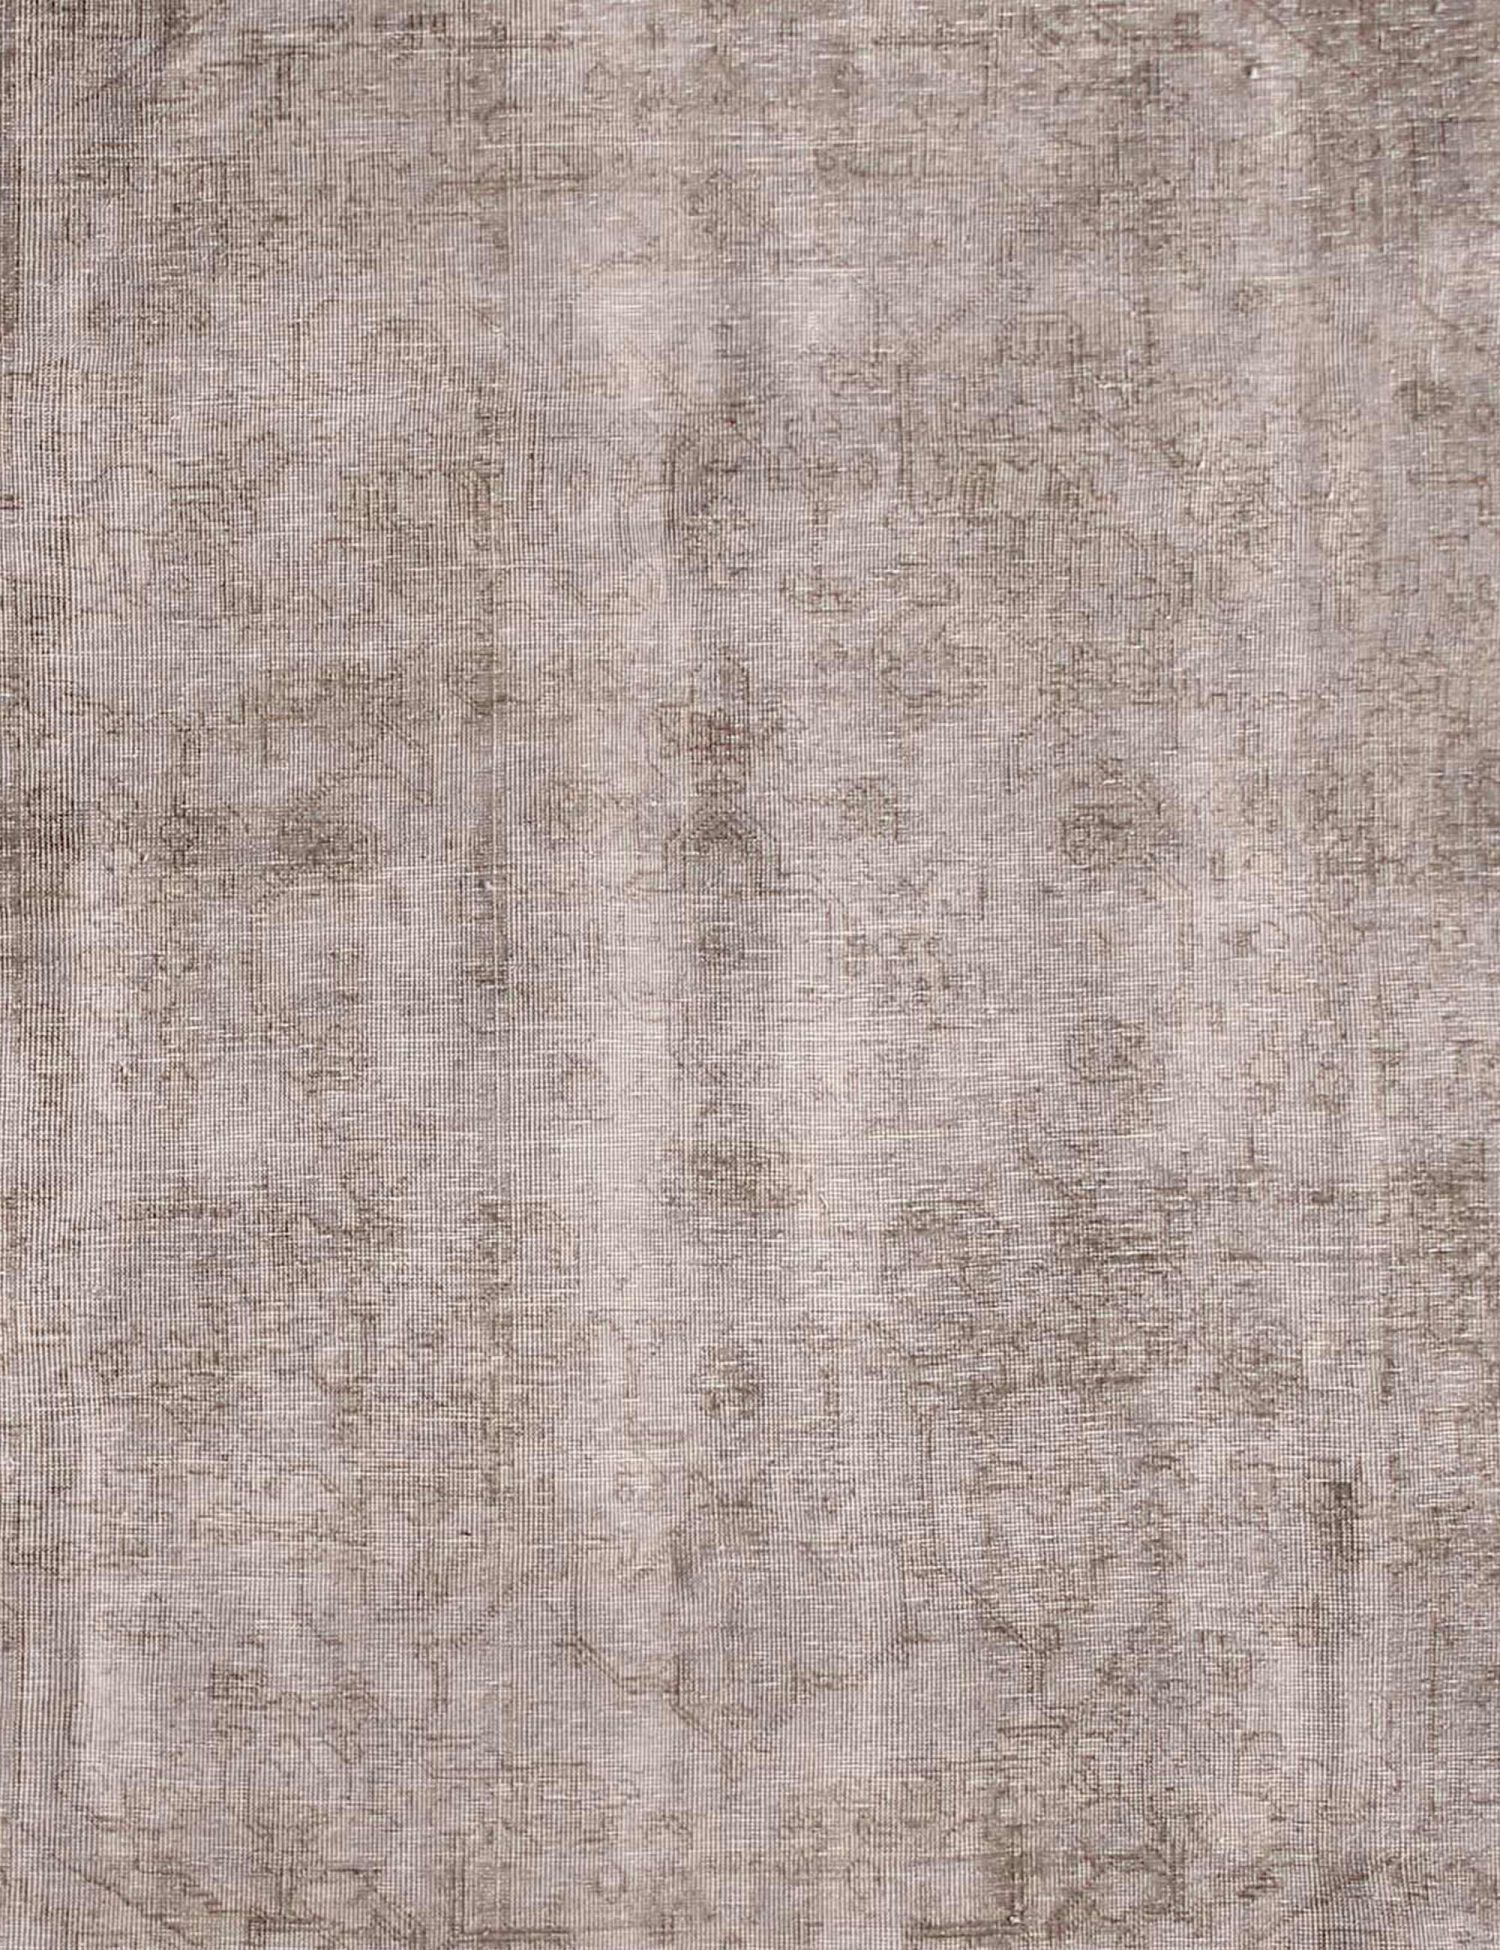 Persischer Vintage Teppich    grau <br/>202 x 202 cm